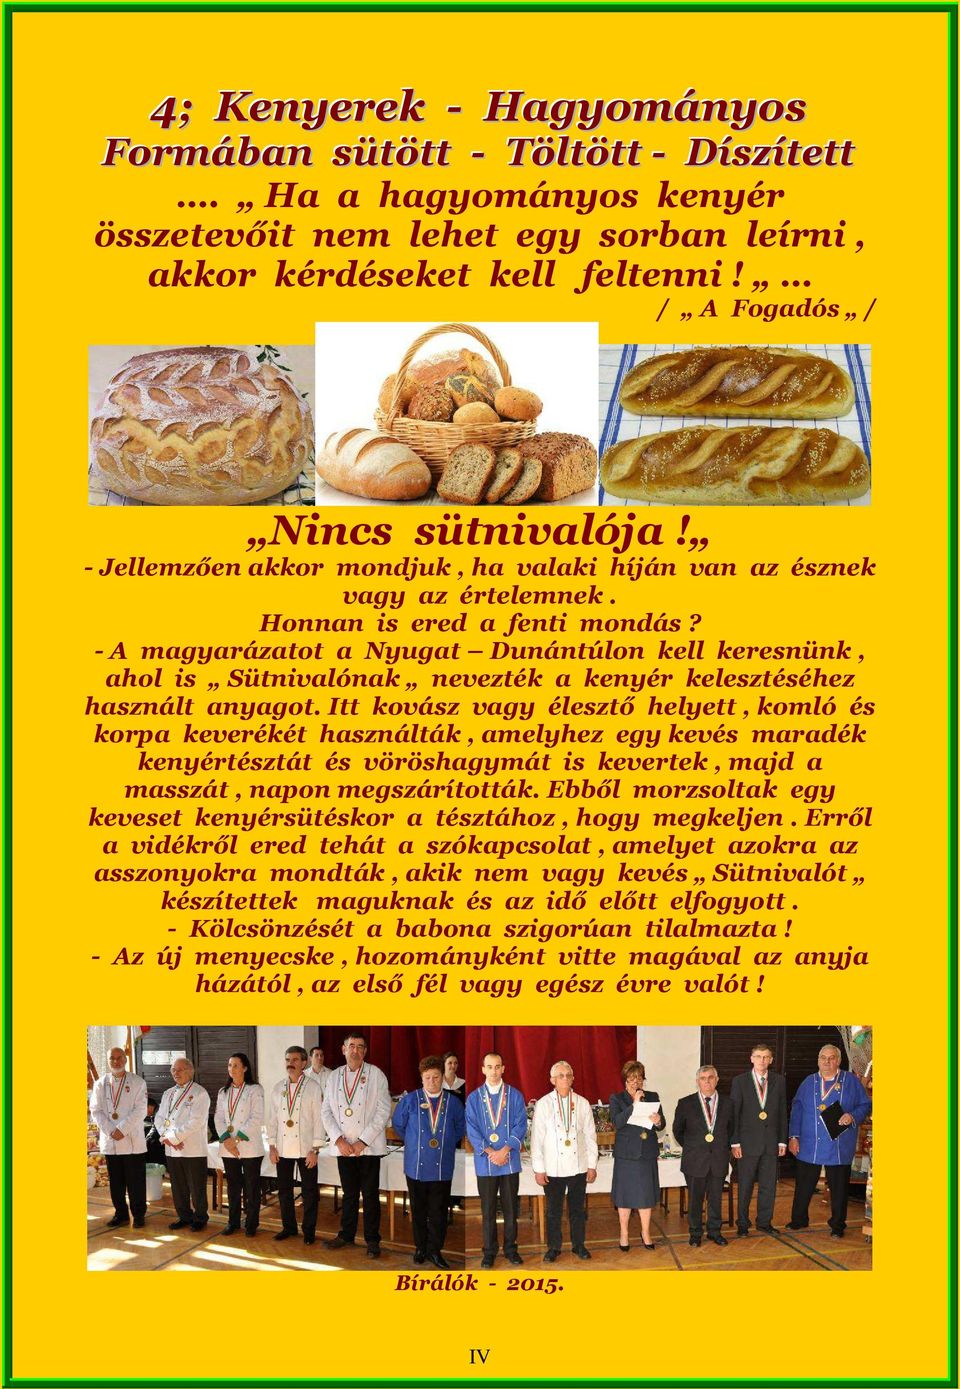 - A magyarázatot a Nyugat Dunántúlon kell keresnünk, ahol is Sütnivalónak nevezték a kenyér kelesztéséhez használt anyagot.